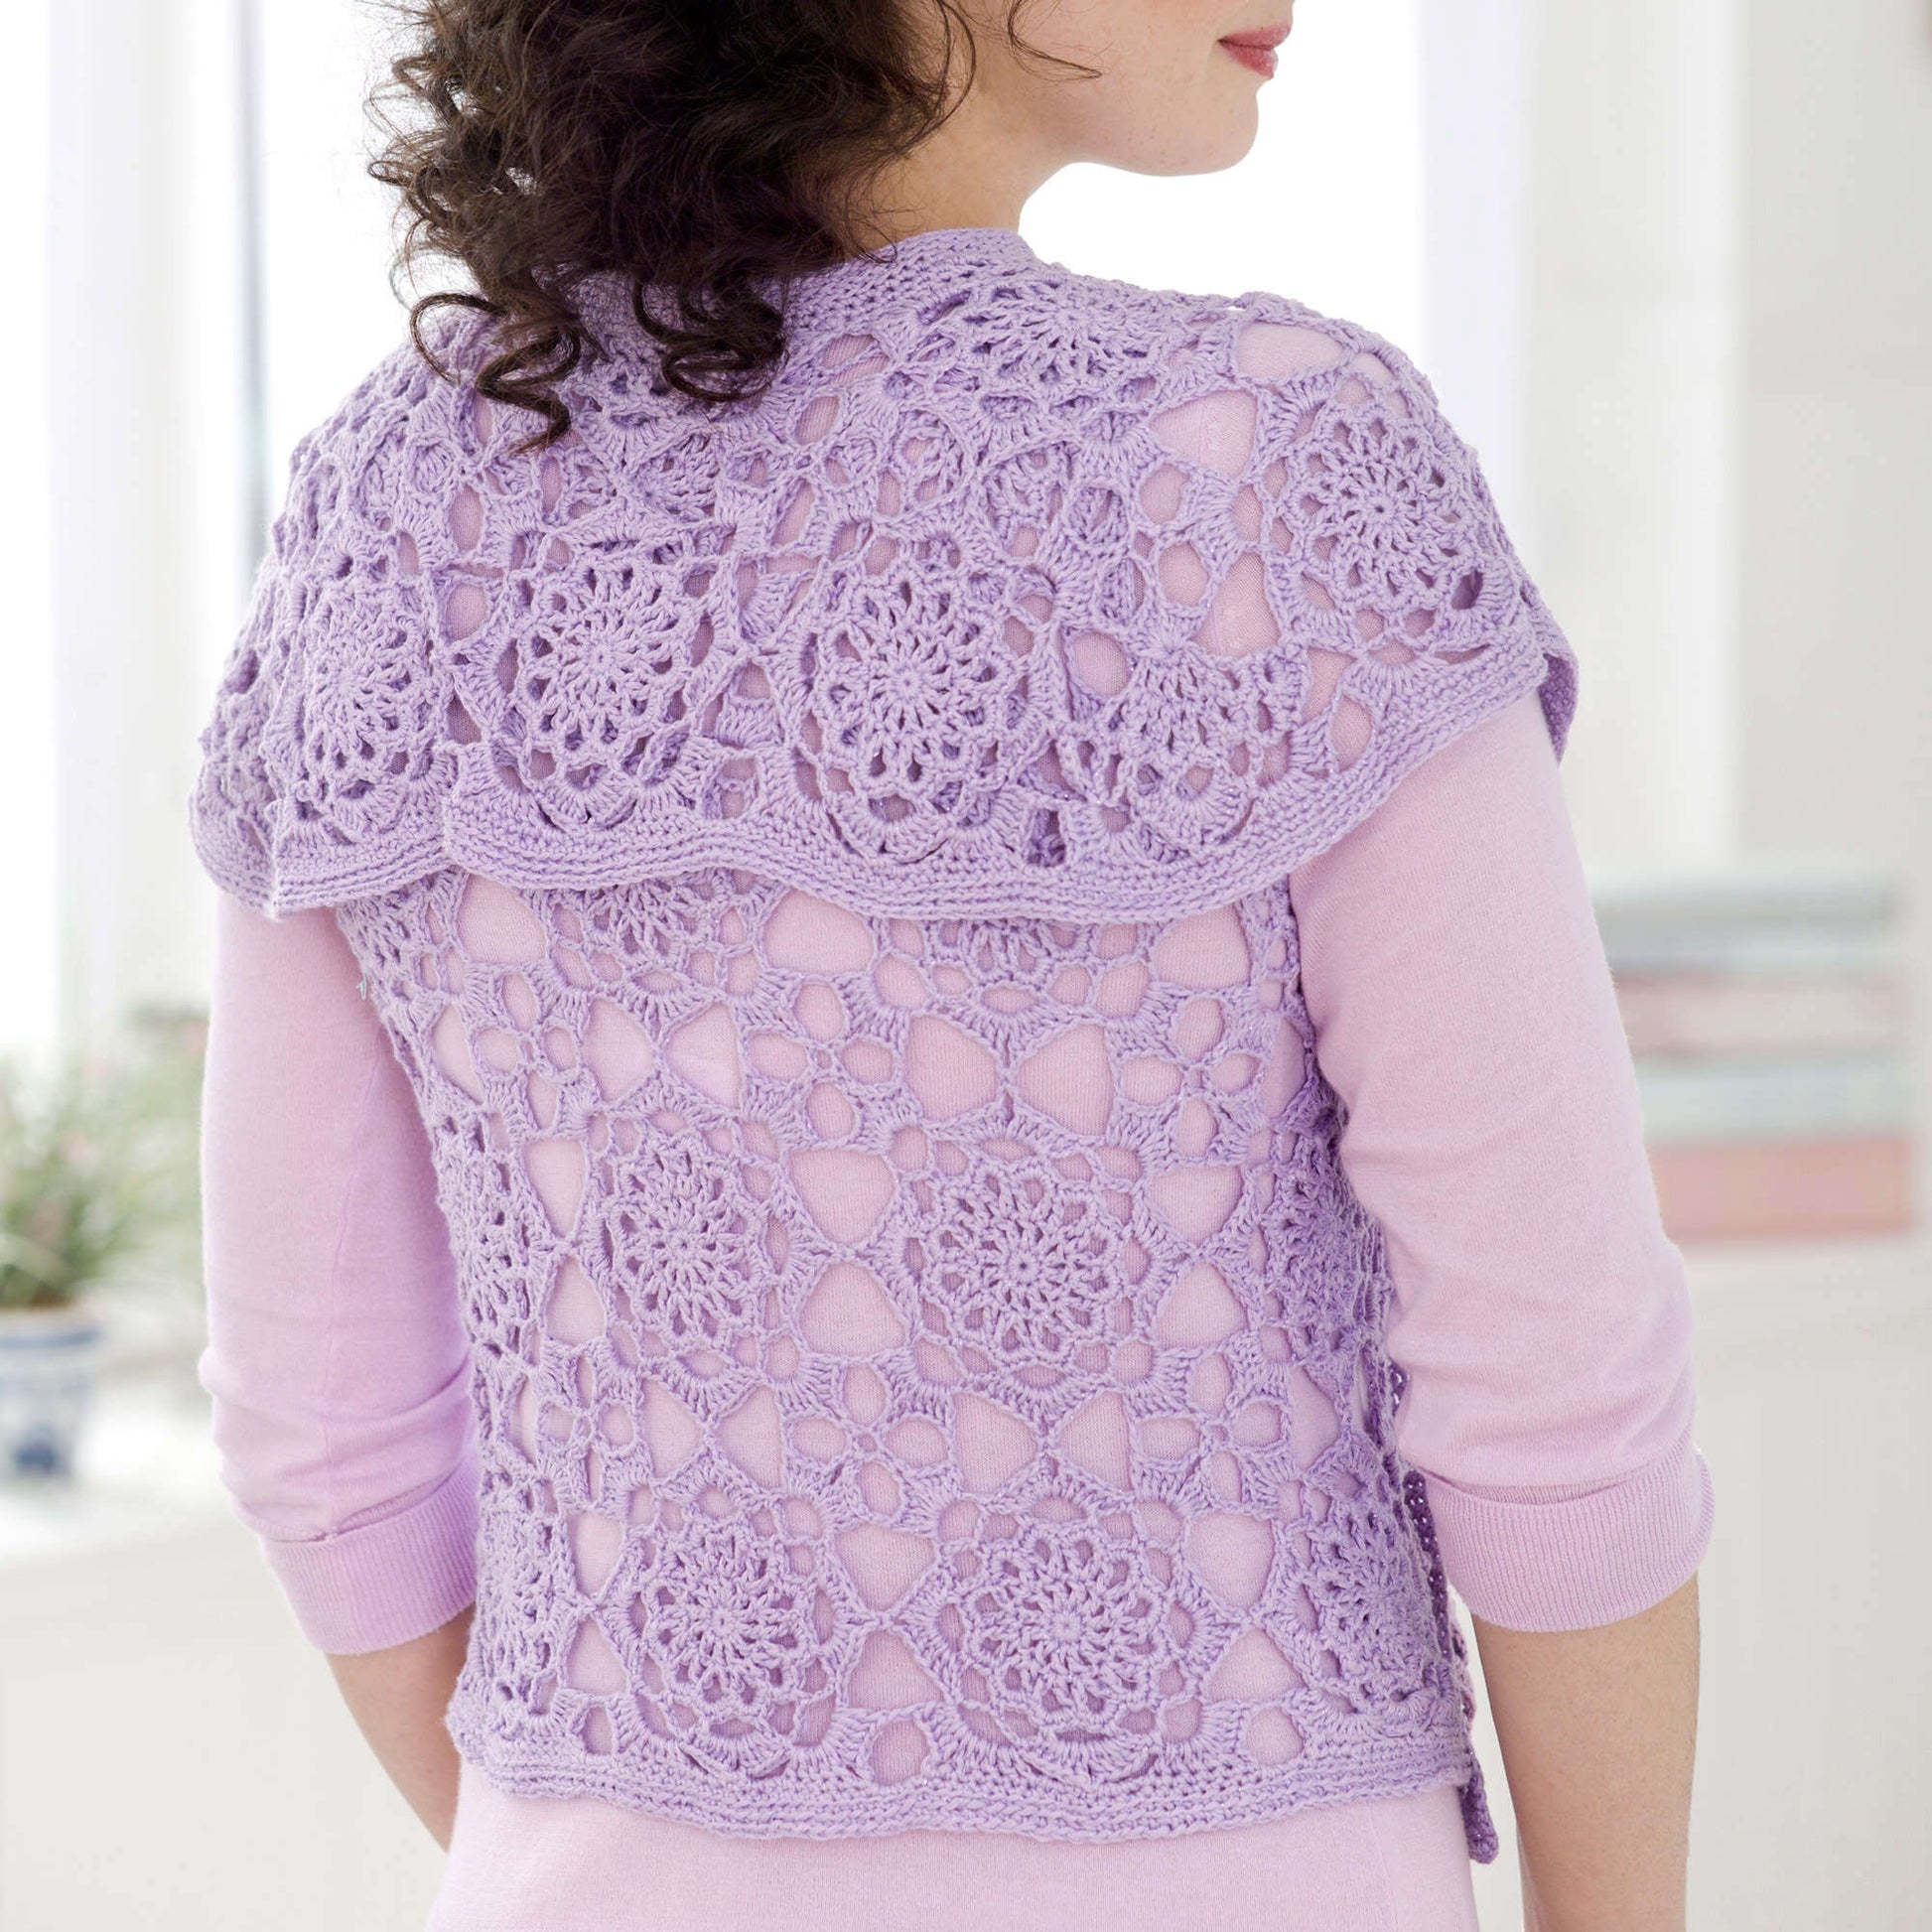 Free Aunt Lydia's Lovely Lace Vest Crochet Pattern